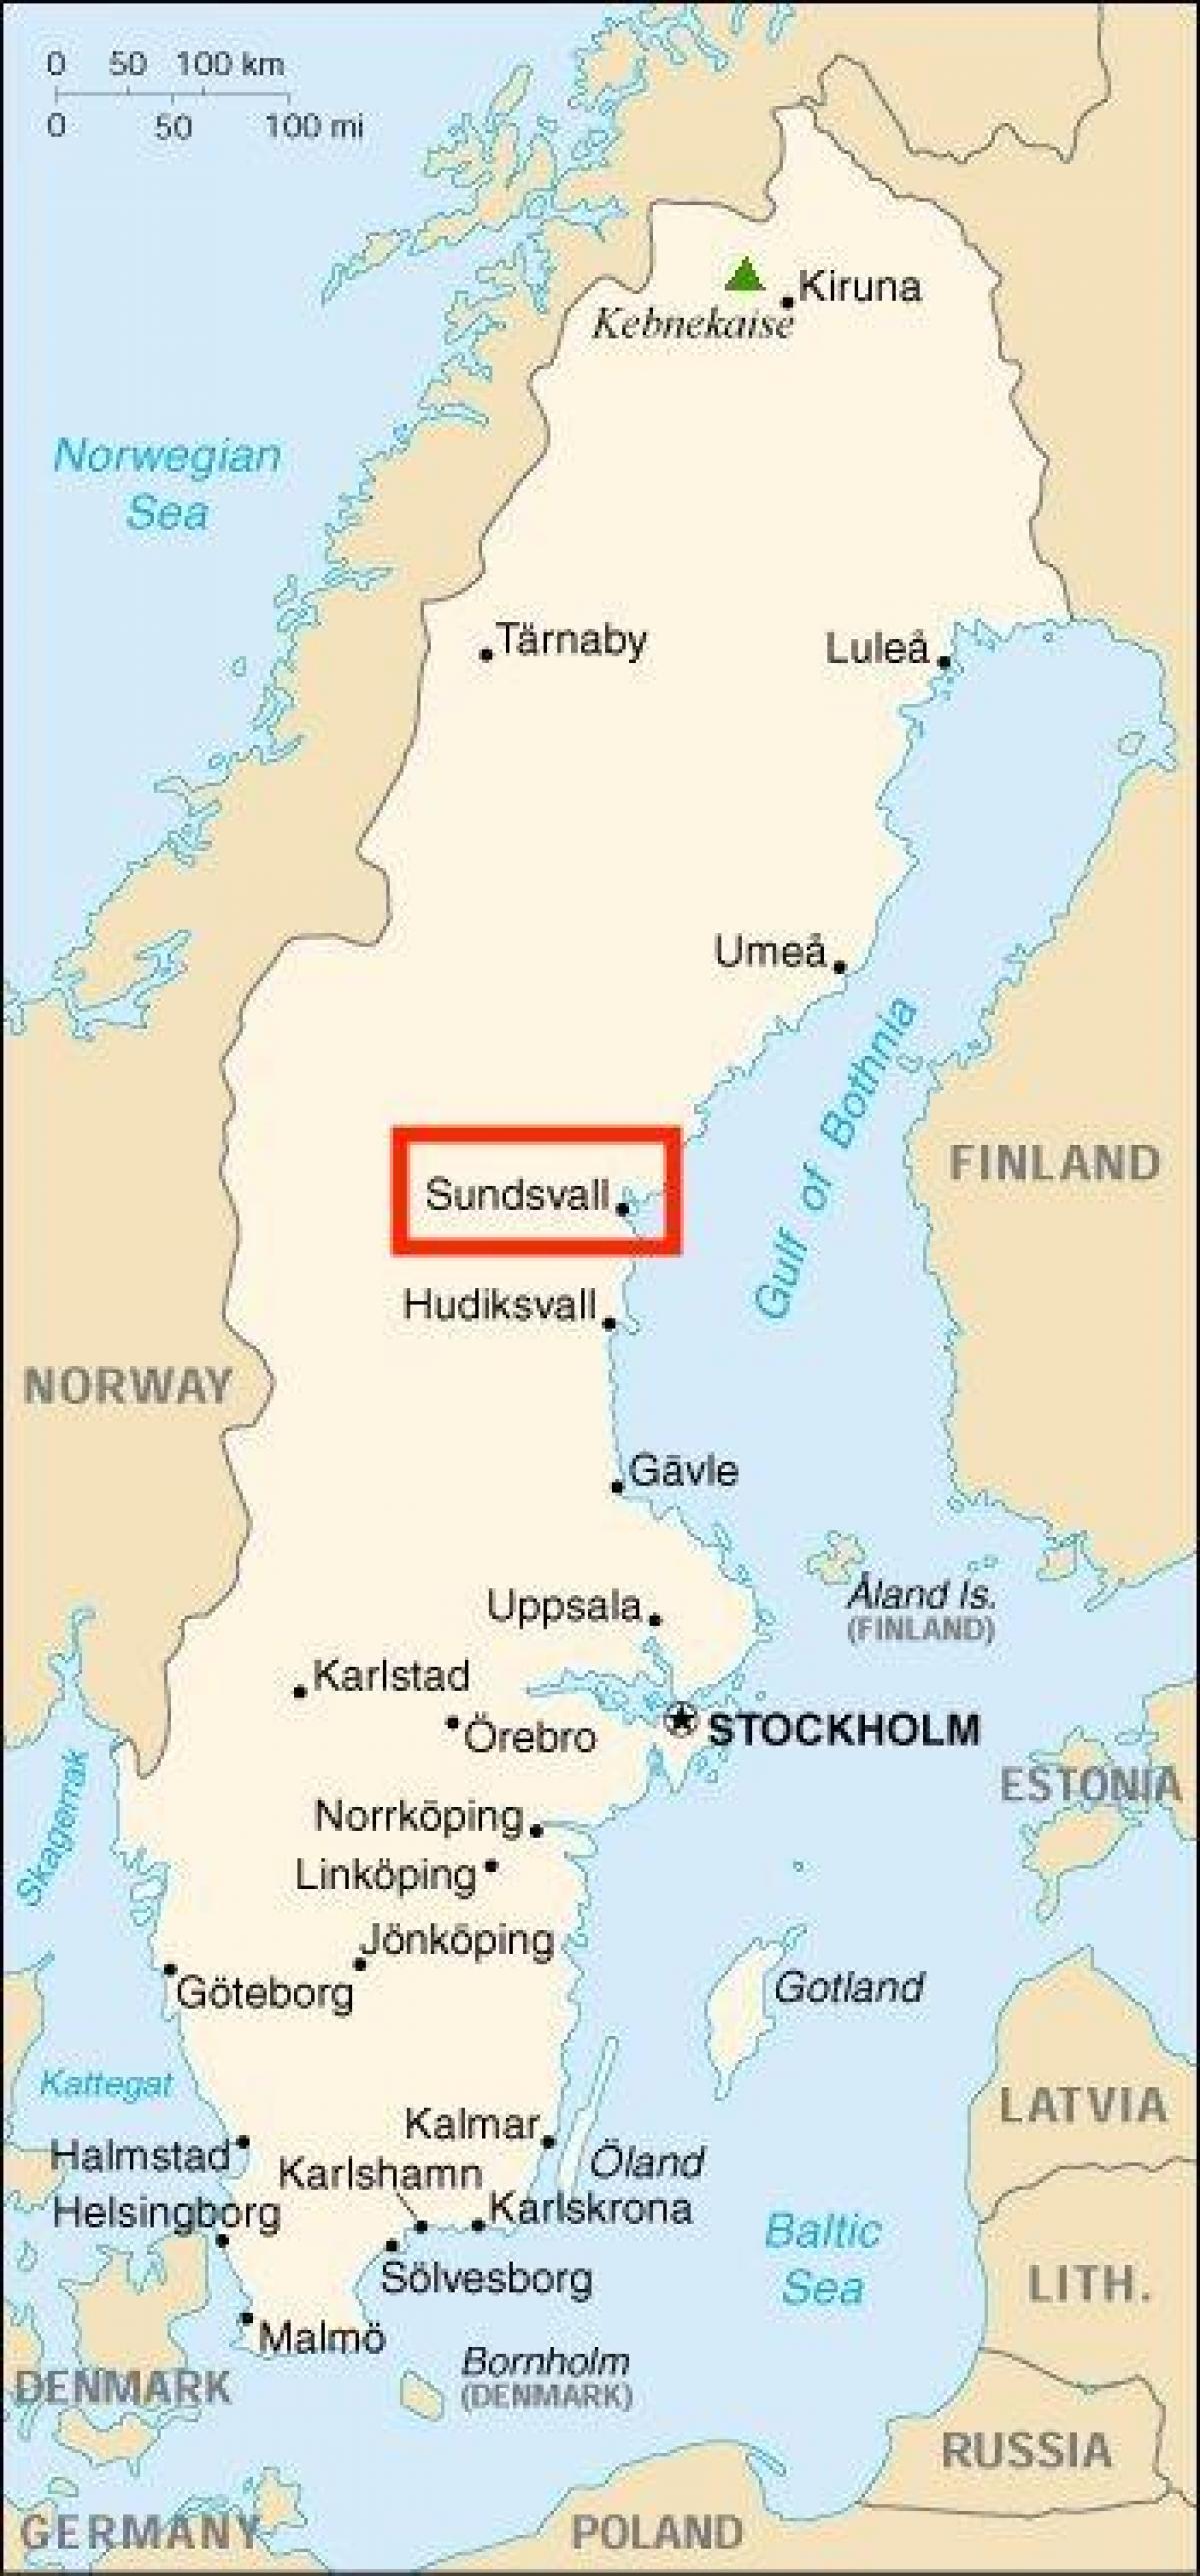 Sundsvall : Sundsvall Sweden Polarsteps : Discover the best of